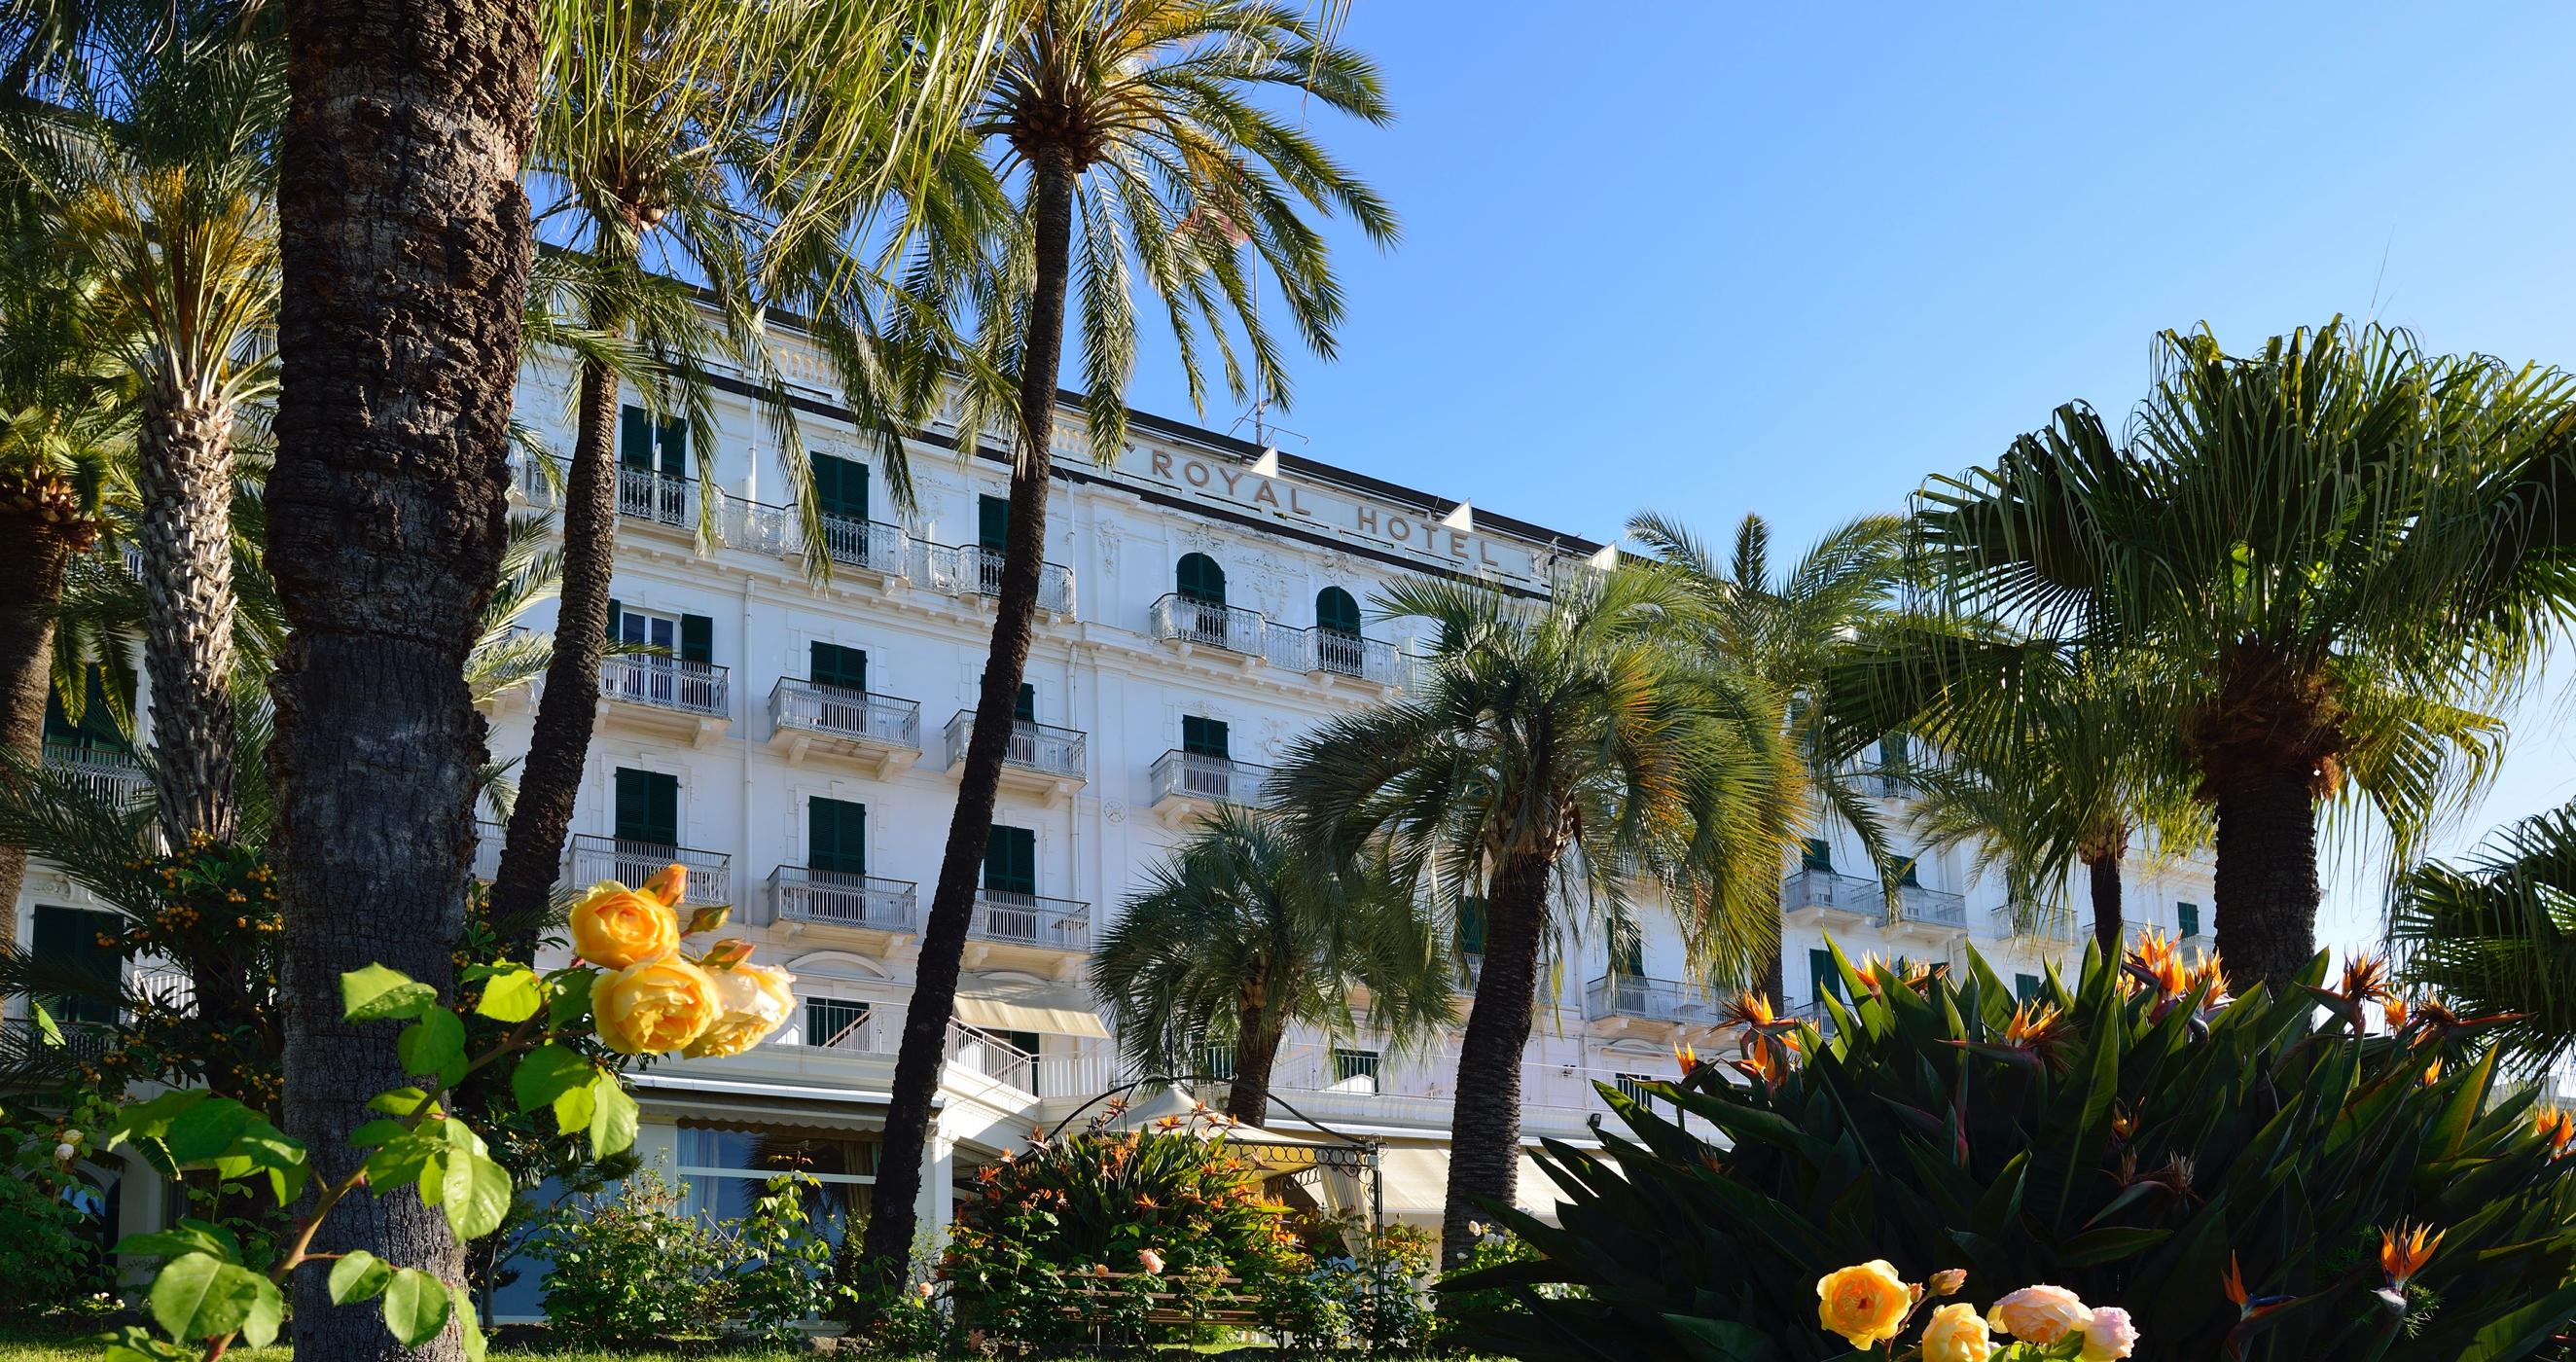 Royal Hotel Sanremo, Italy